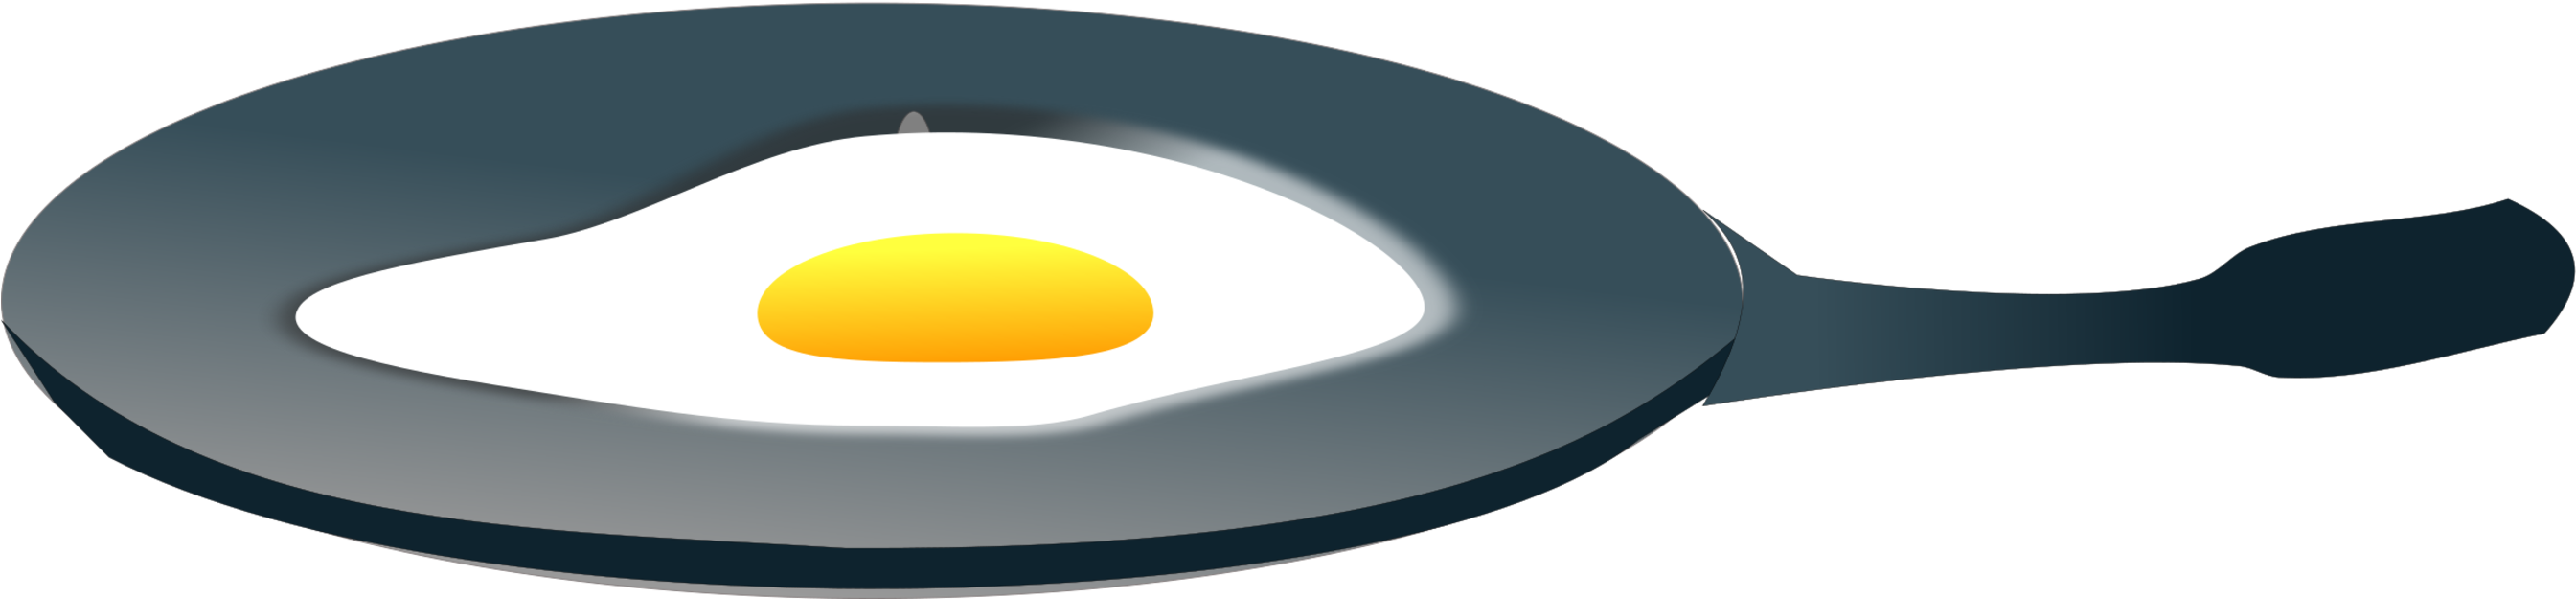 Pan Fried Egg-PNG-Fotos